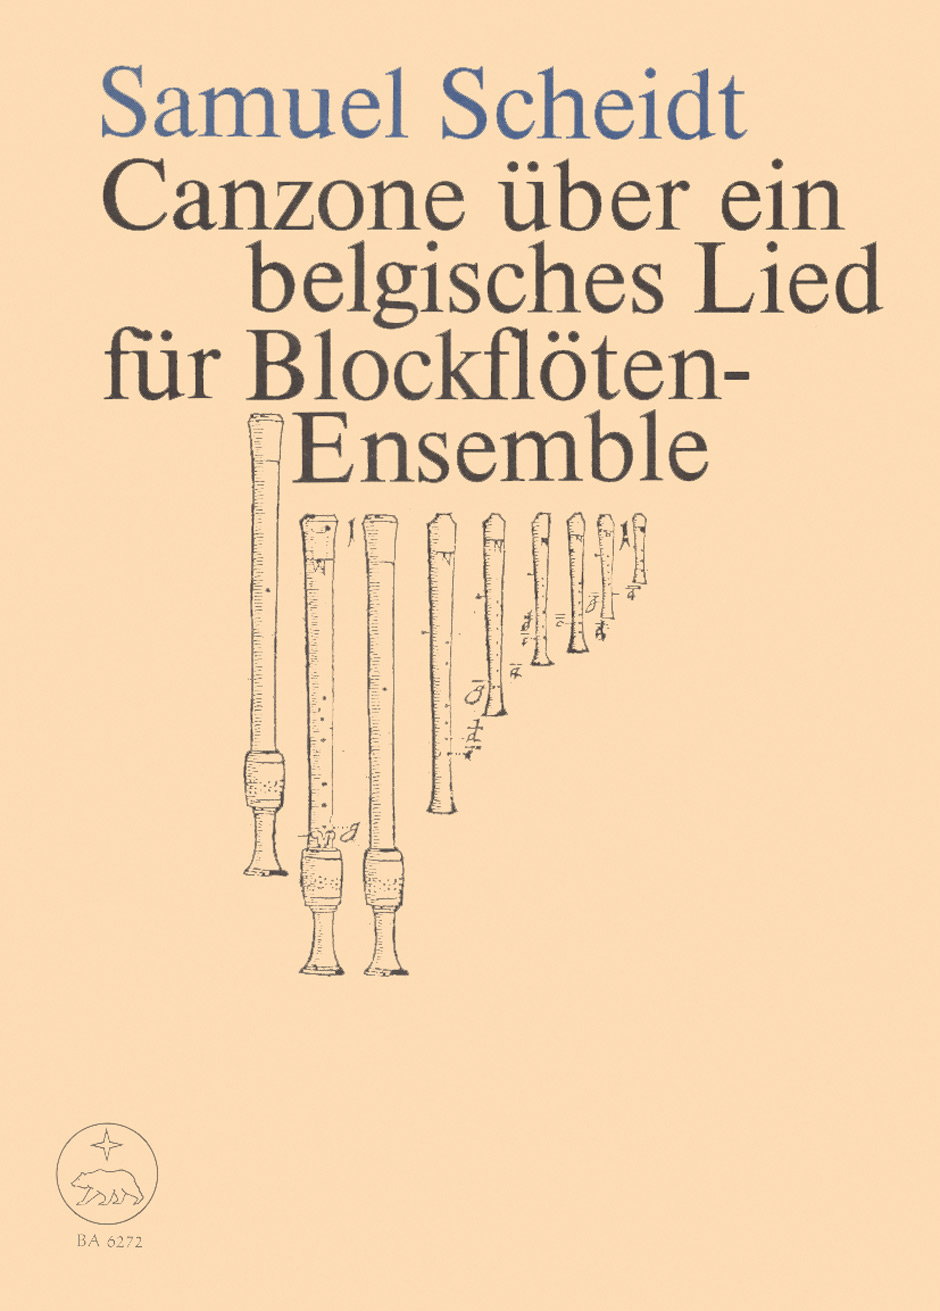 Samuel Scheidt: Canzone ueber ein belgisches Lied: Recorder Ensemble: Score and